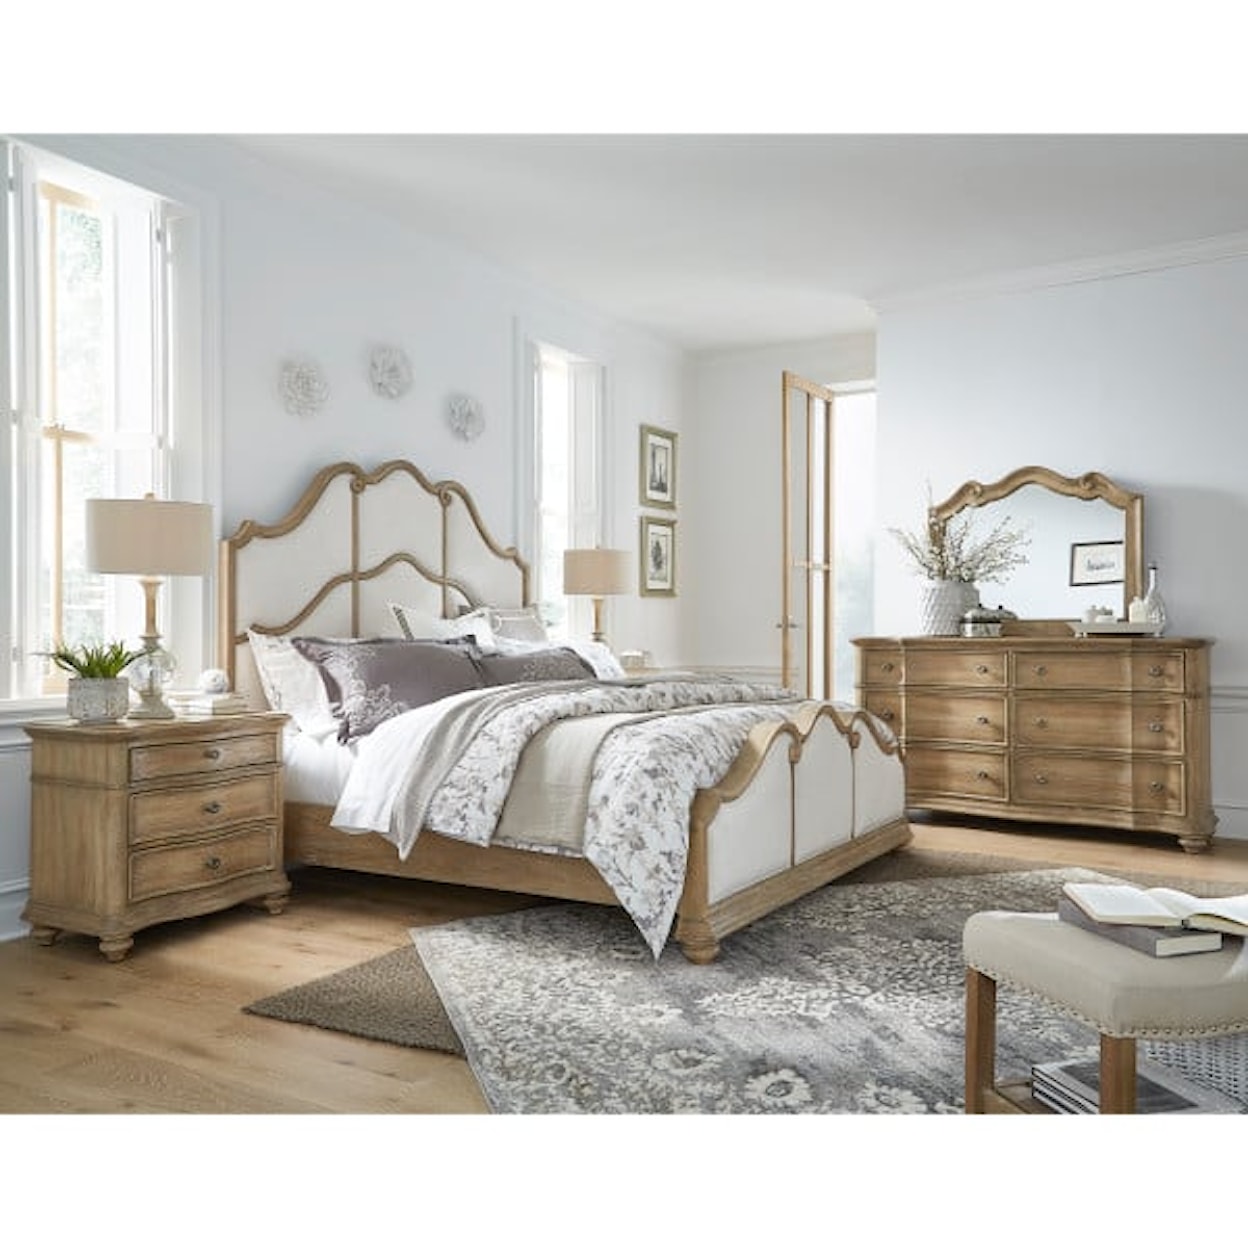 Pulaski Furniture Weston Hills King Bed